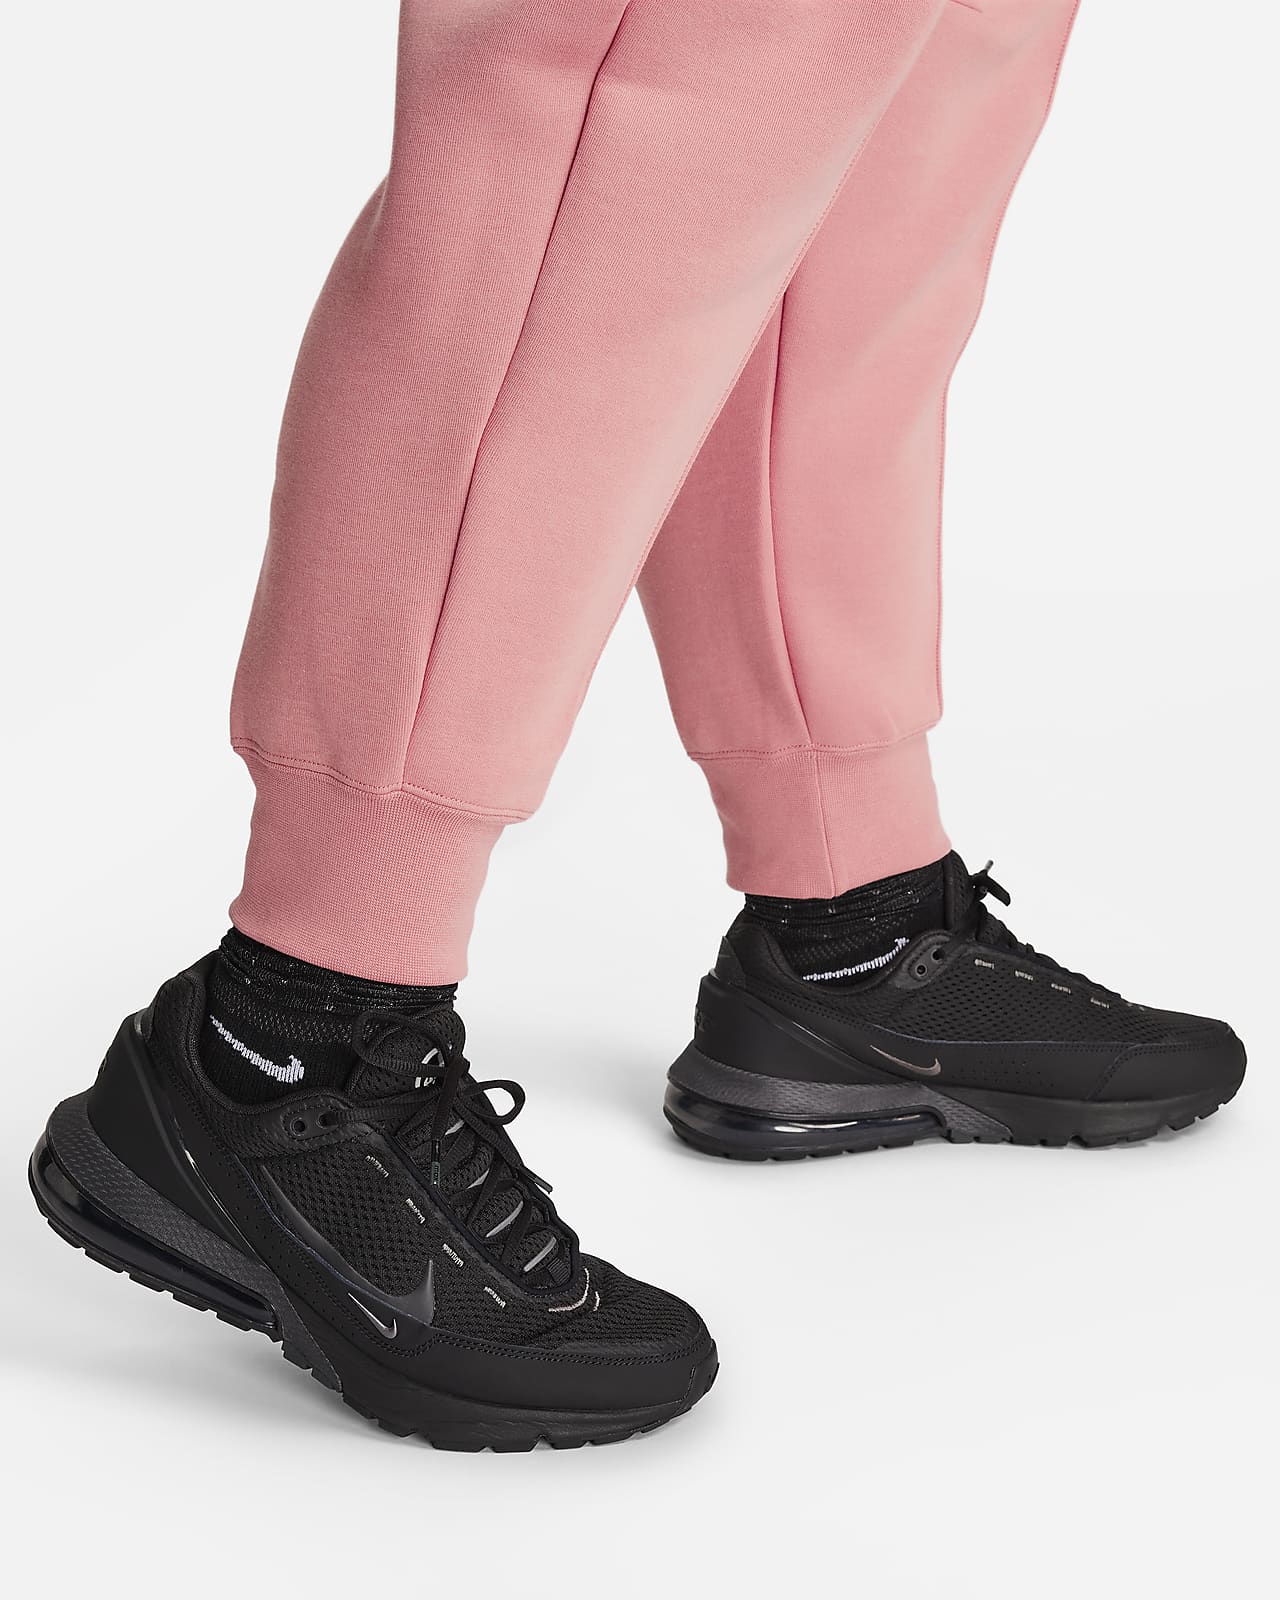 Nike Sportswear Women's Tech Fleece Joggers Pink Oxford/Black - FW22 - US